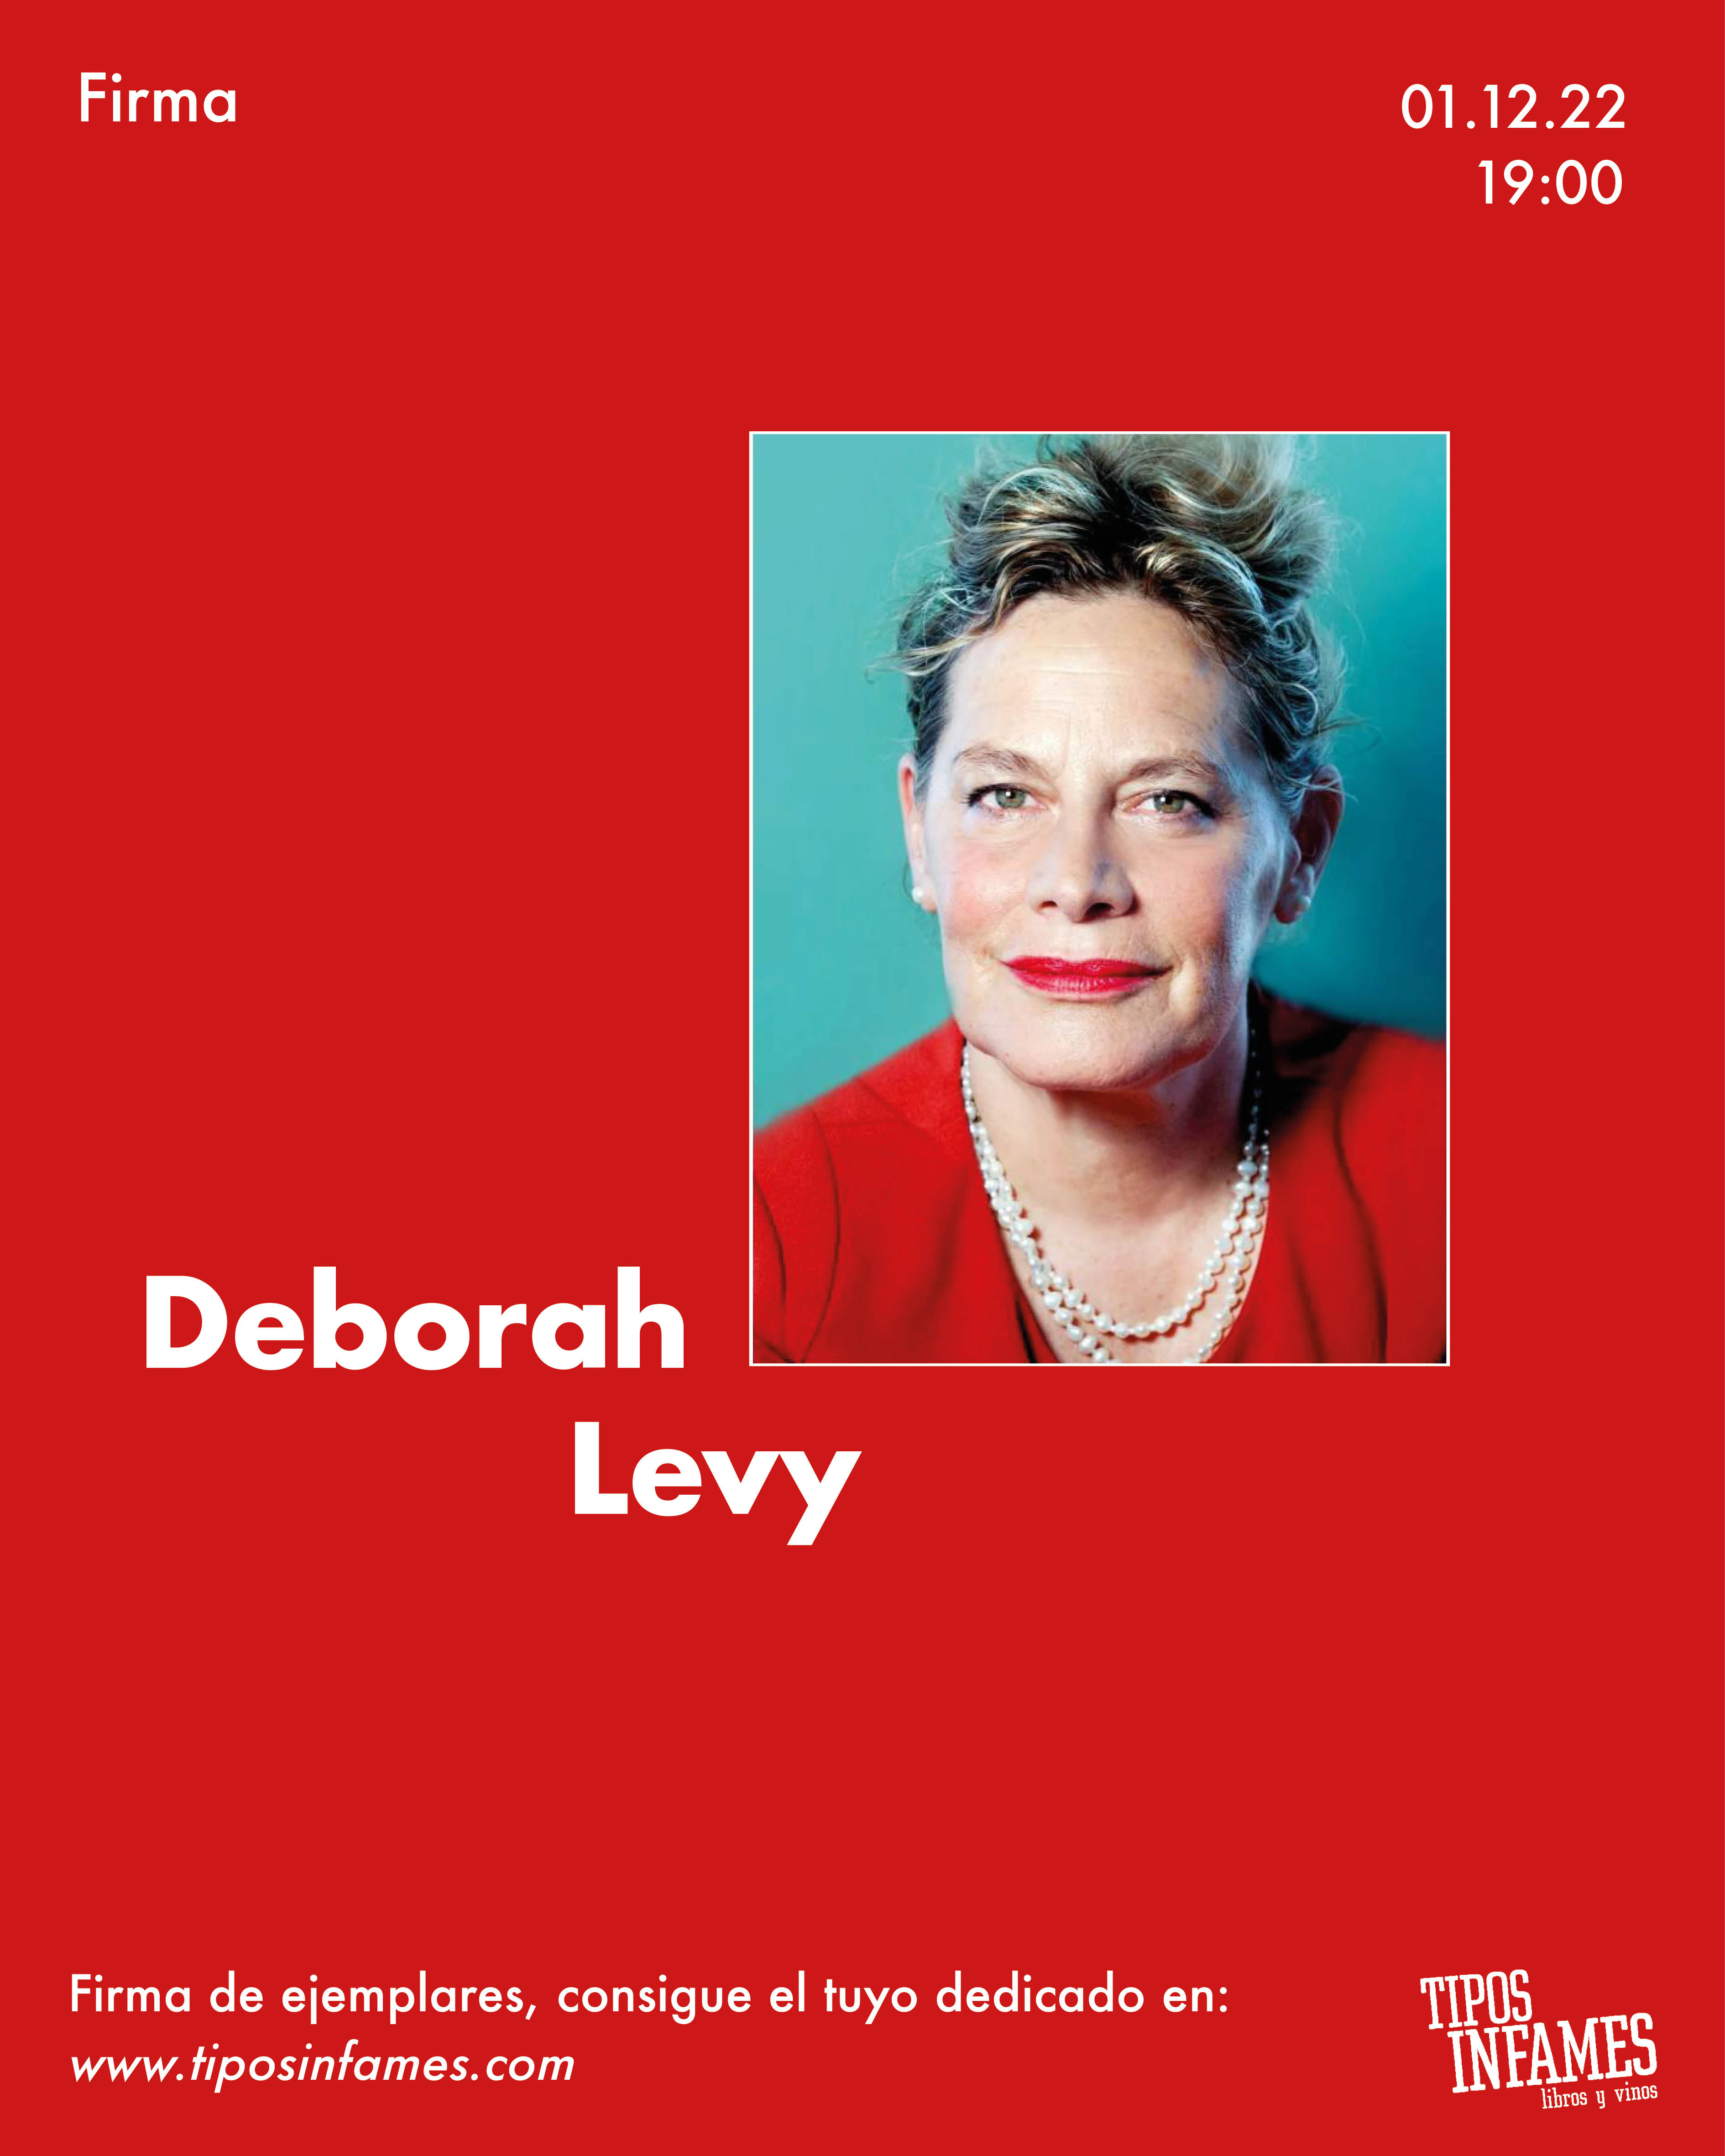 Cita con... Deborah Levy